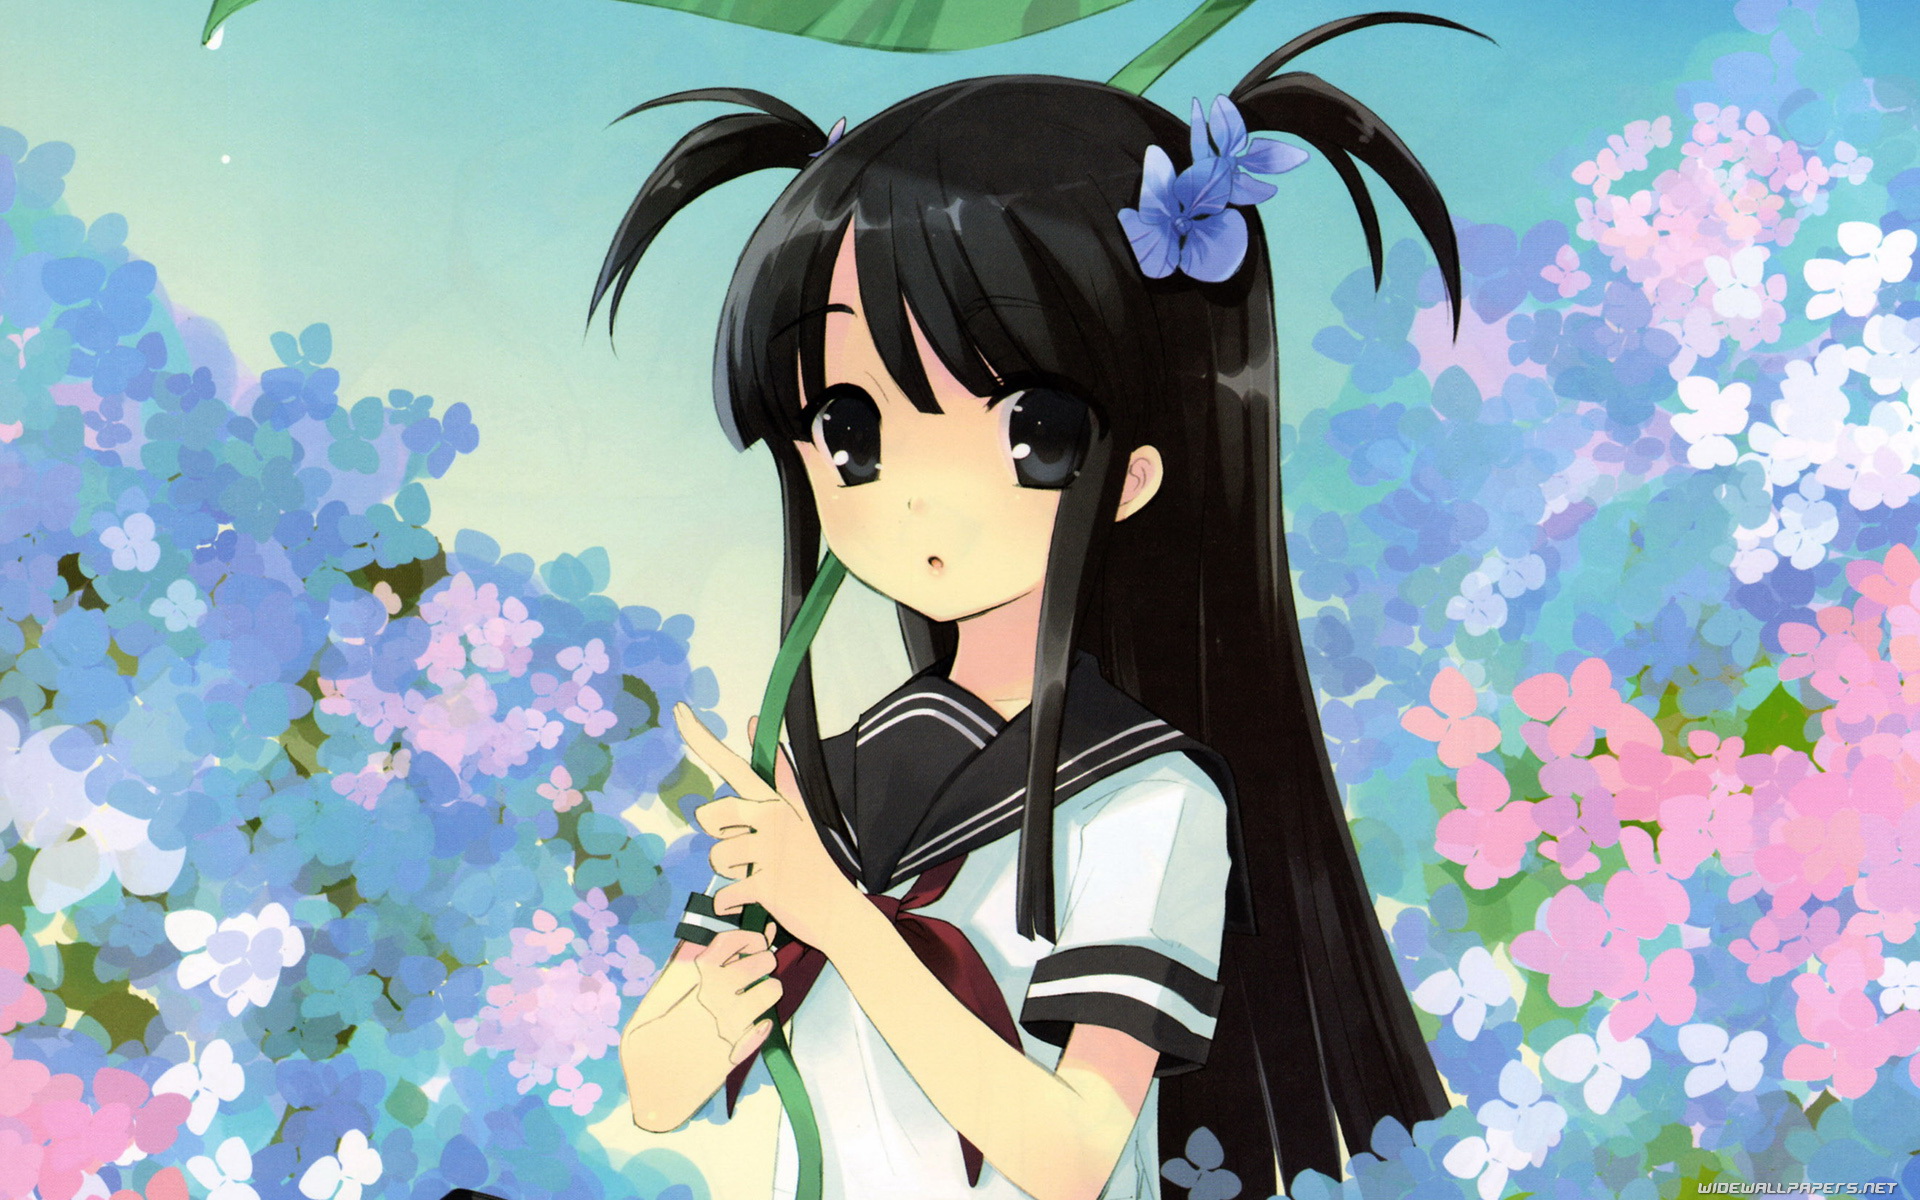 Cute Anime Wallpapers HD - WallpaperSafari